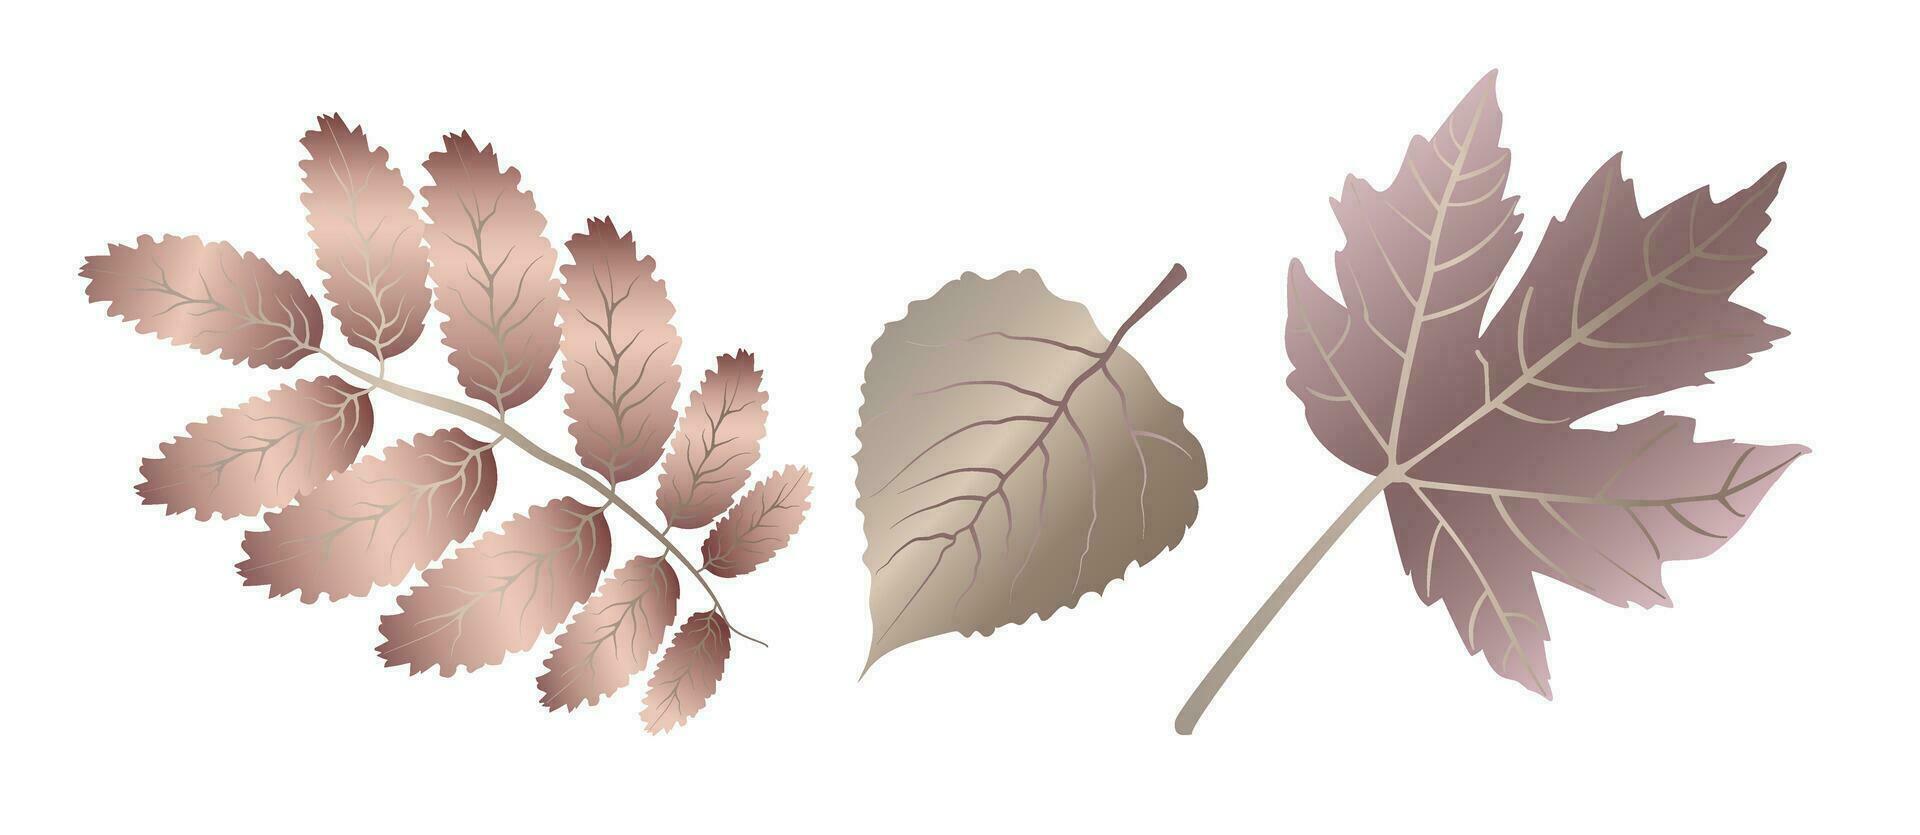 höst detaljerad ådrad lönn och valnöt löv, blad ven, i ovanlig metallisk färger på en vit bakgrund. vektor